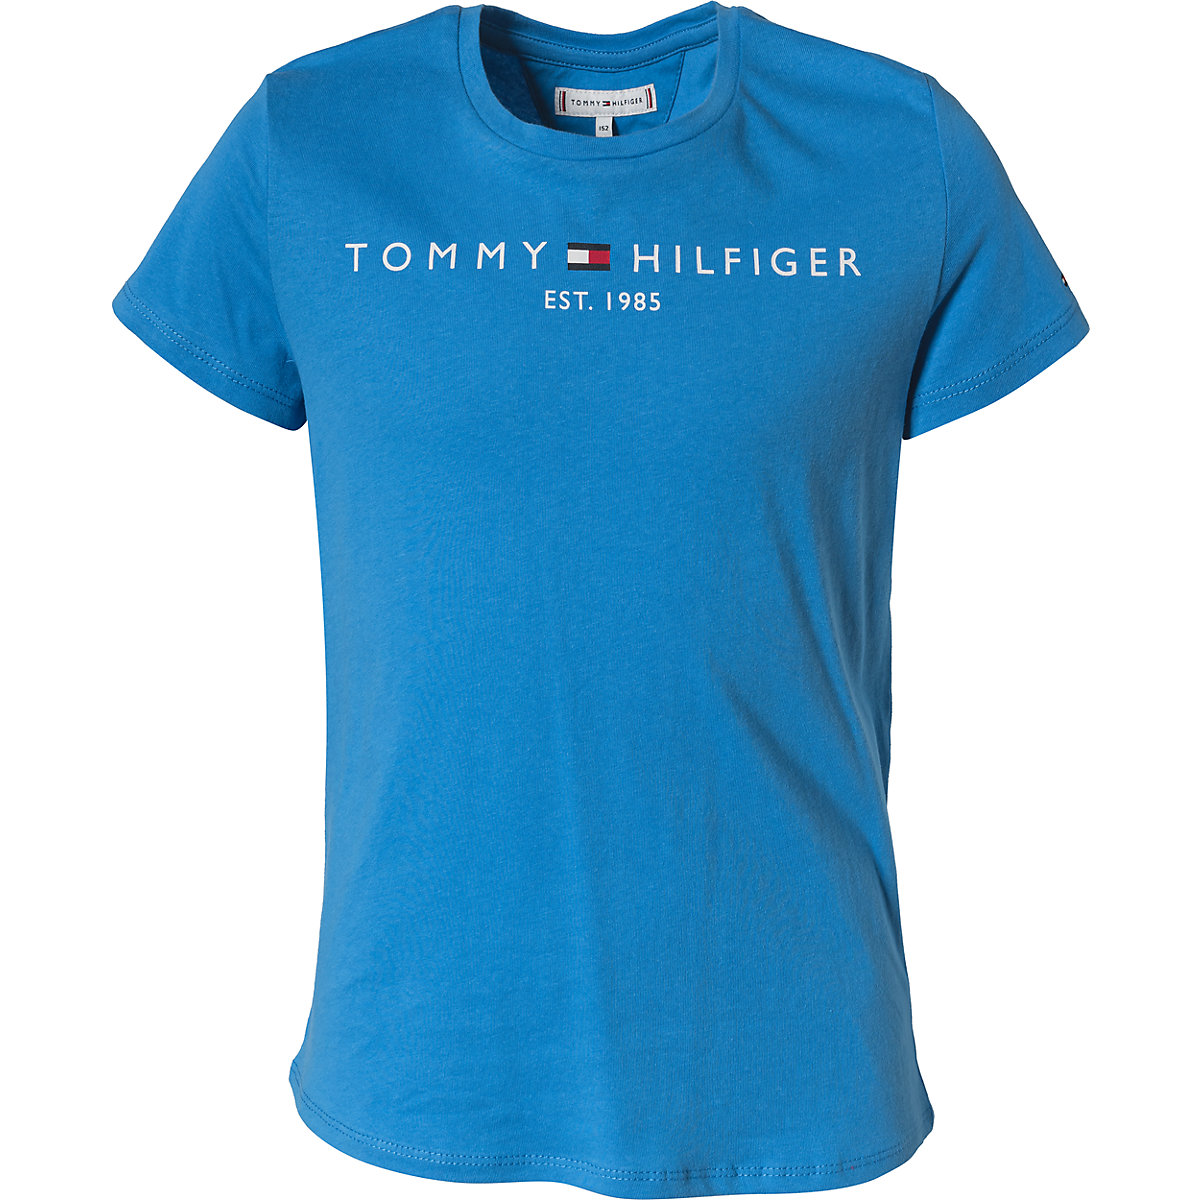 TOMMY HILFIGER T-Shirt für Mädchen Organic Cotton aqua